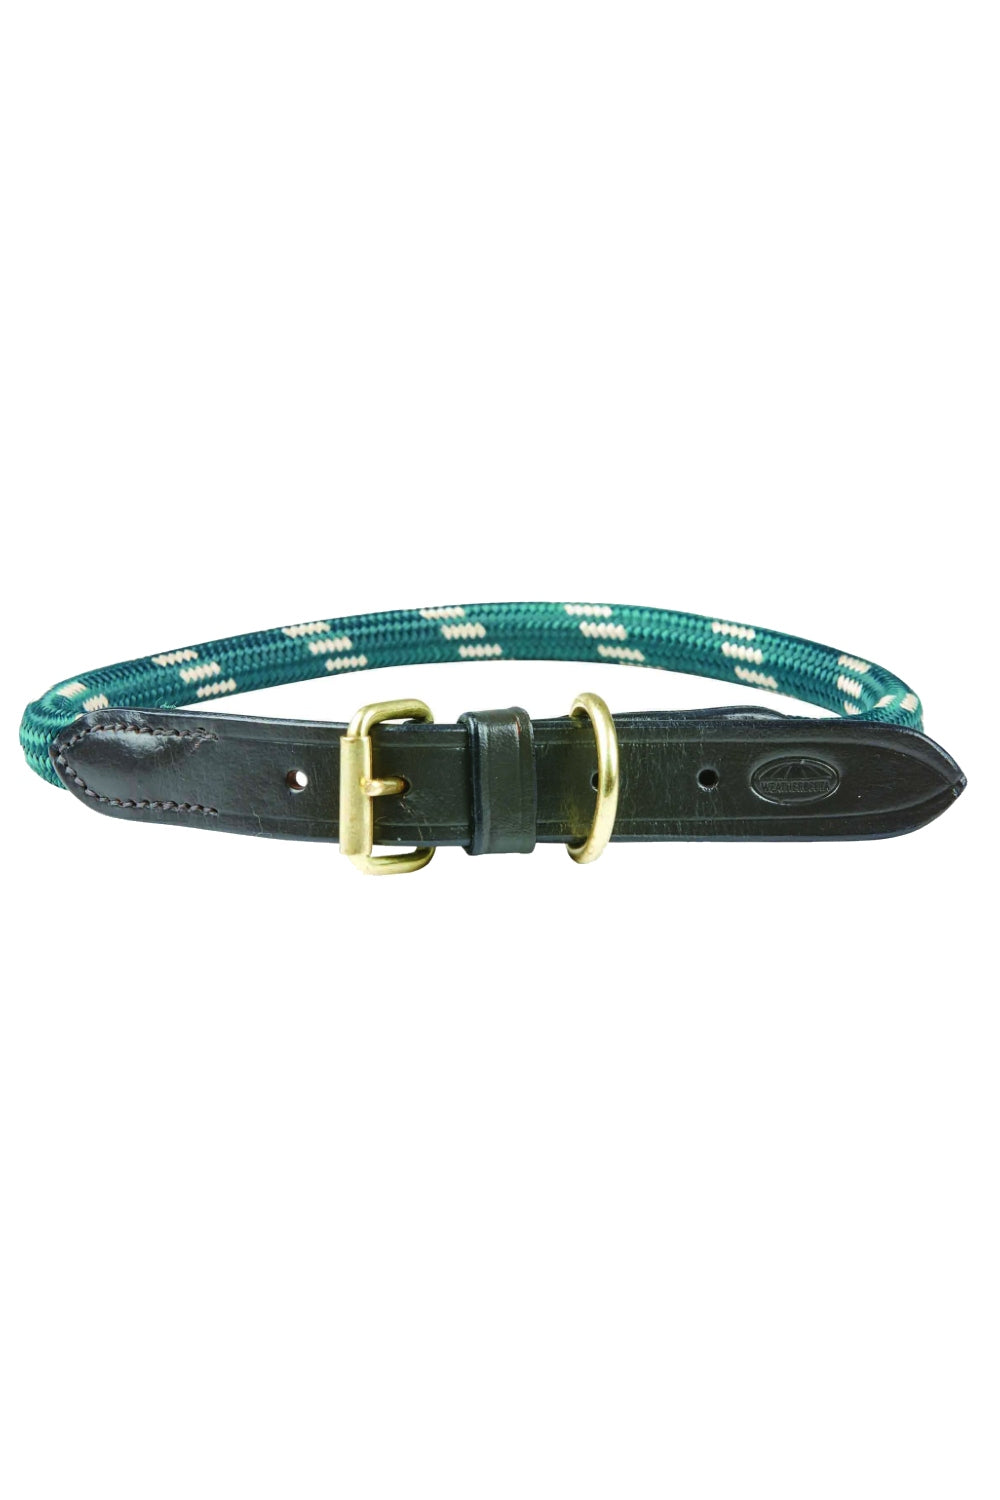 WeatherBeeta Rope Leather Dog Collar in Hunter Green/Brown 